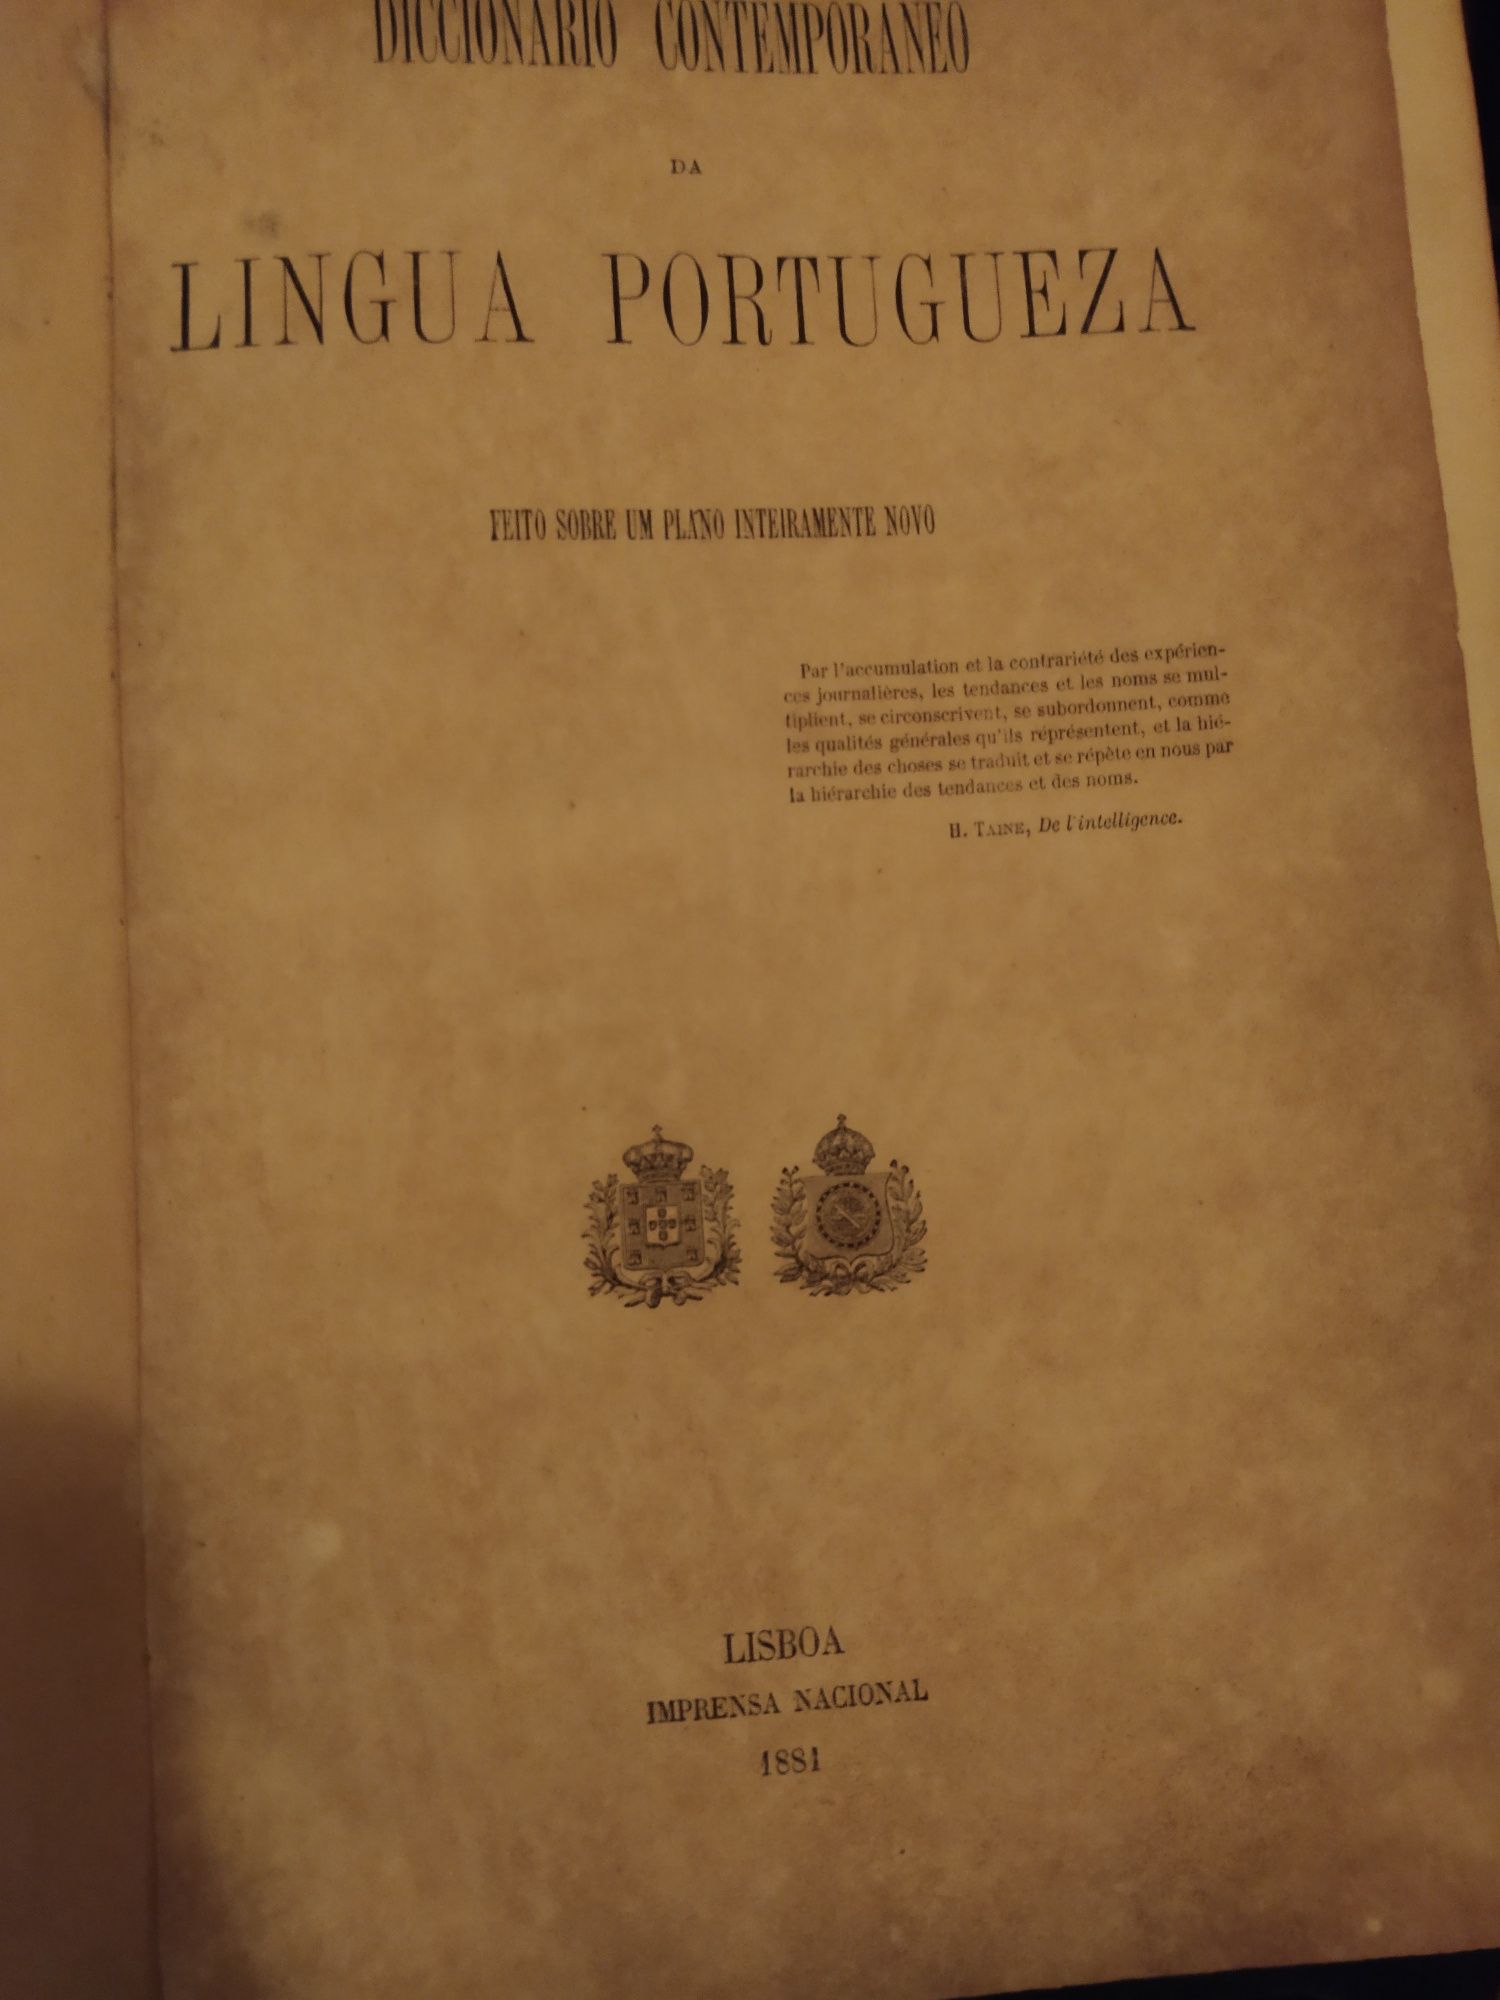 Dicionário Contemporâneo da Língua Portuguesa 1881 2 vol.